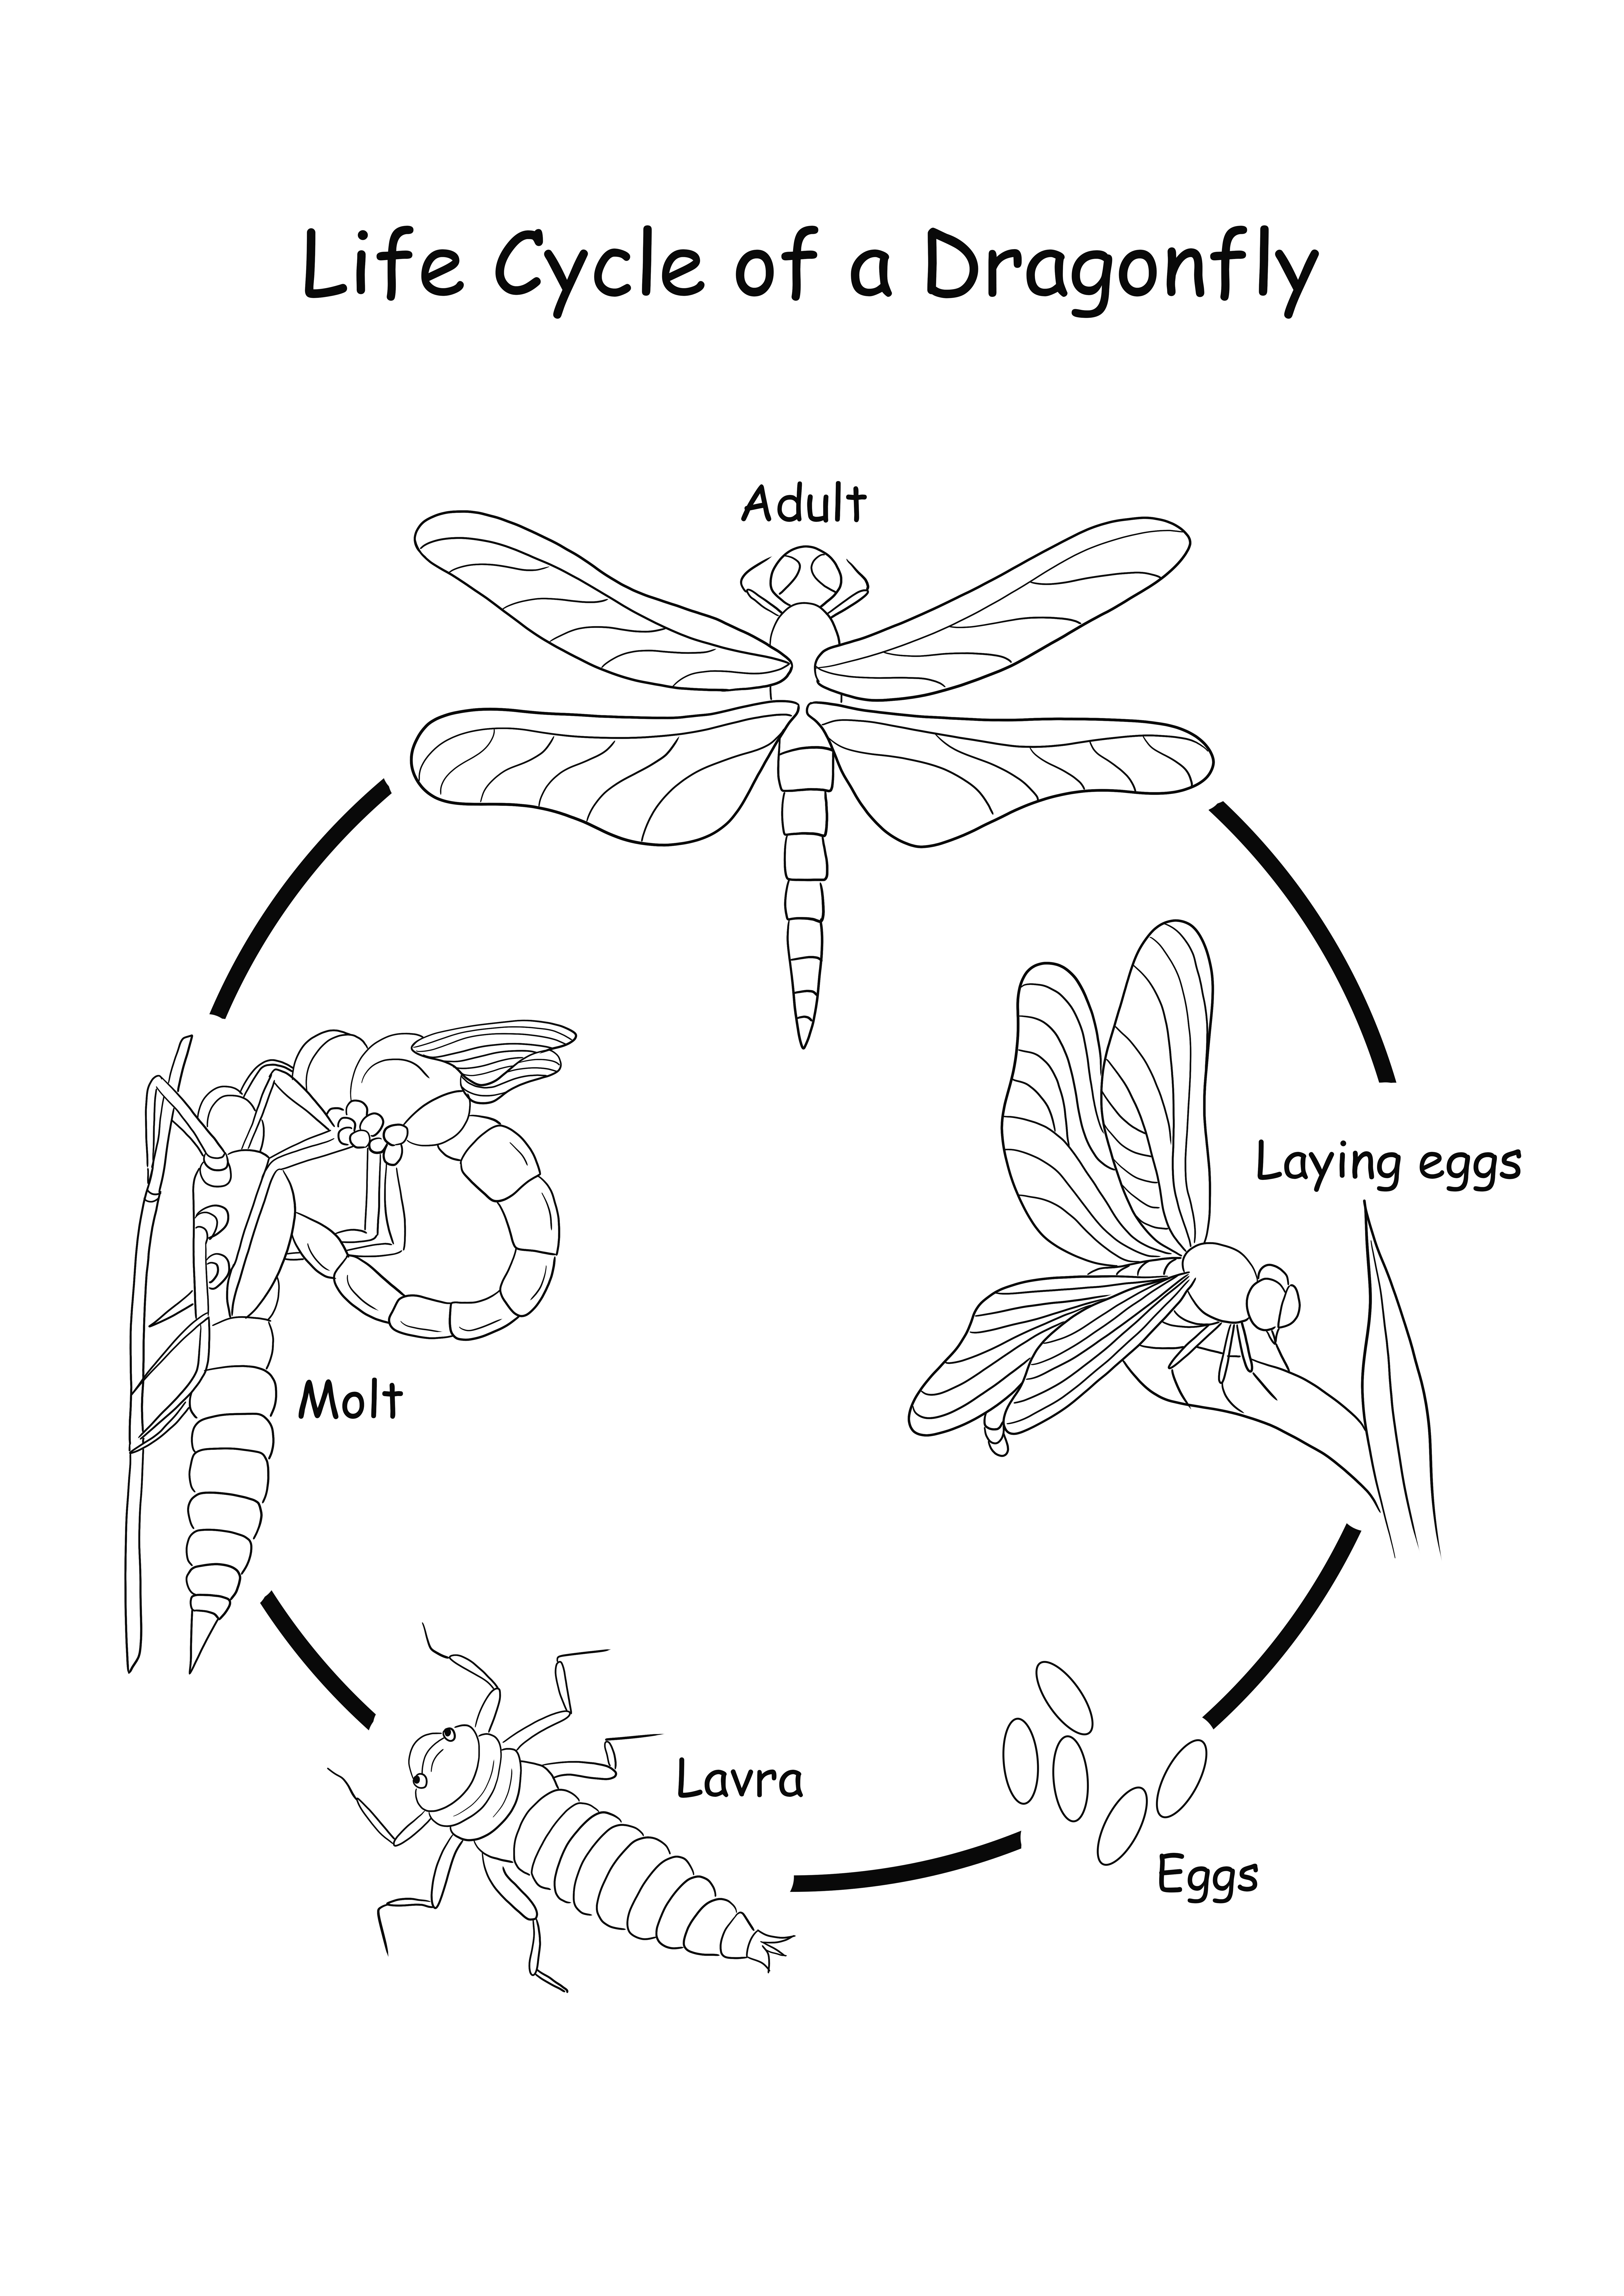 Life Cycle of a Dragonfly mencetak atau mengunduh secara gratis